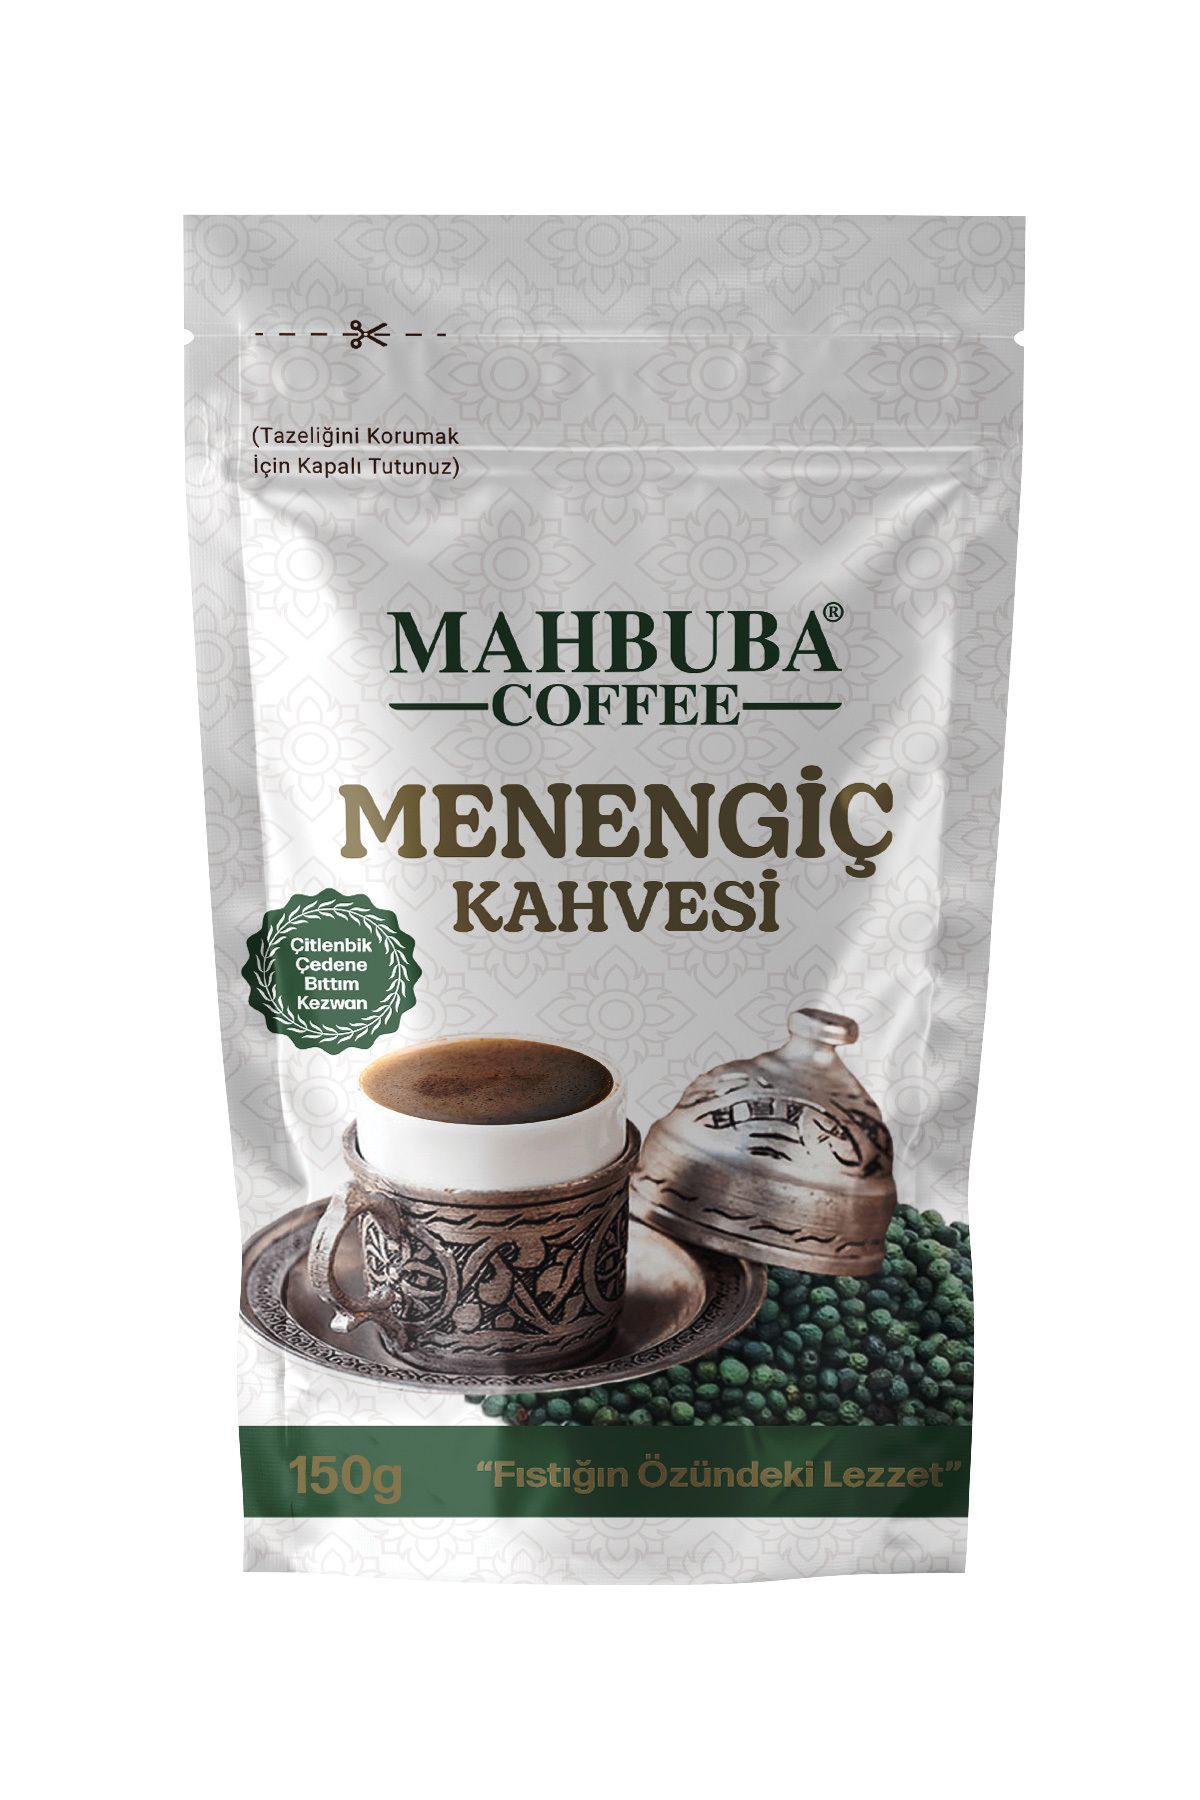 Mahbuba Toz Menengiç Kahvesi 150gr